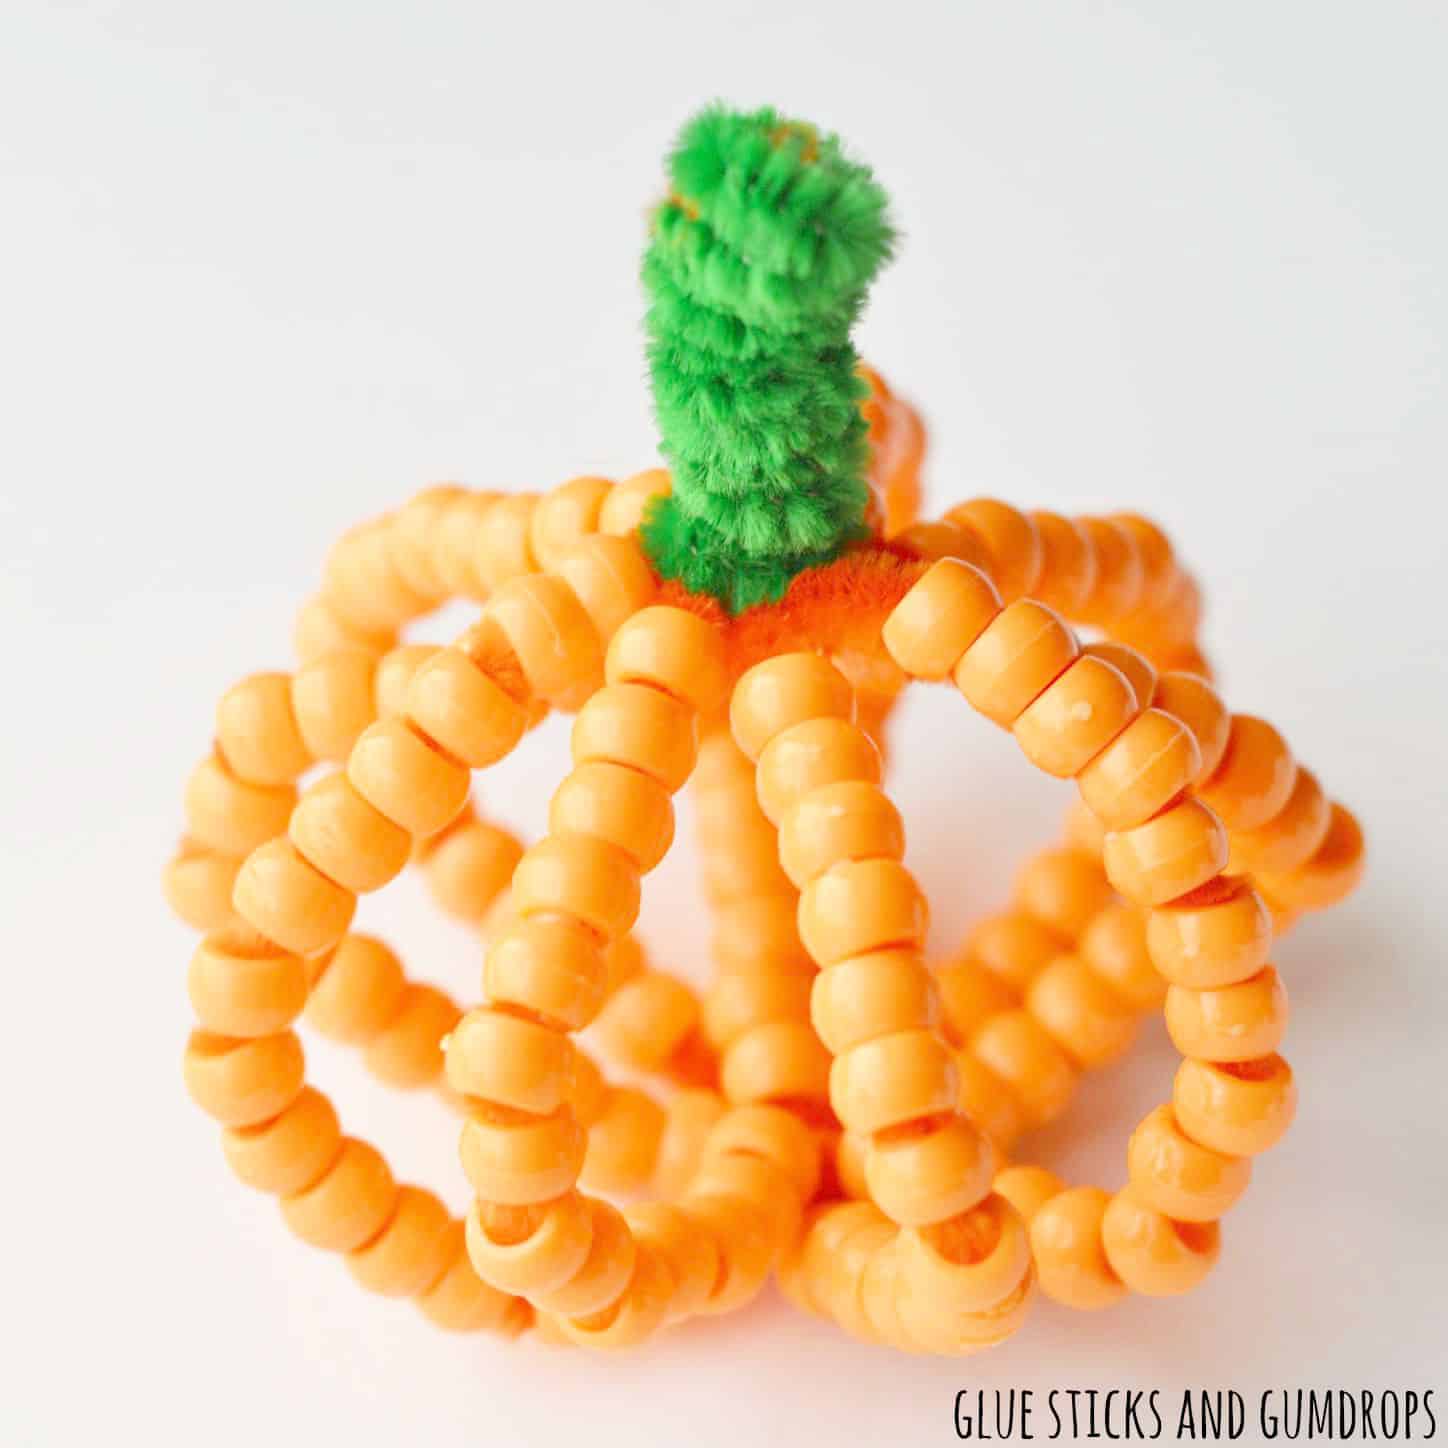 beaded pumpkin craft for kids